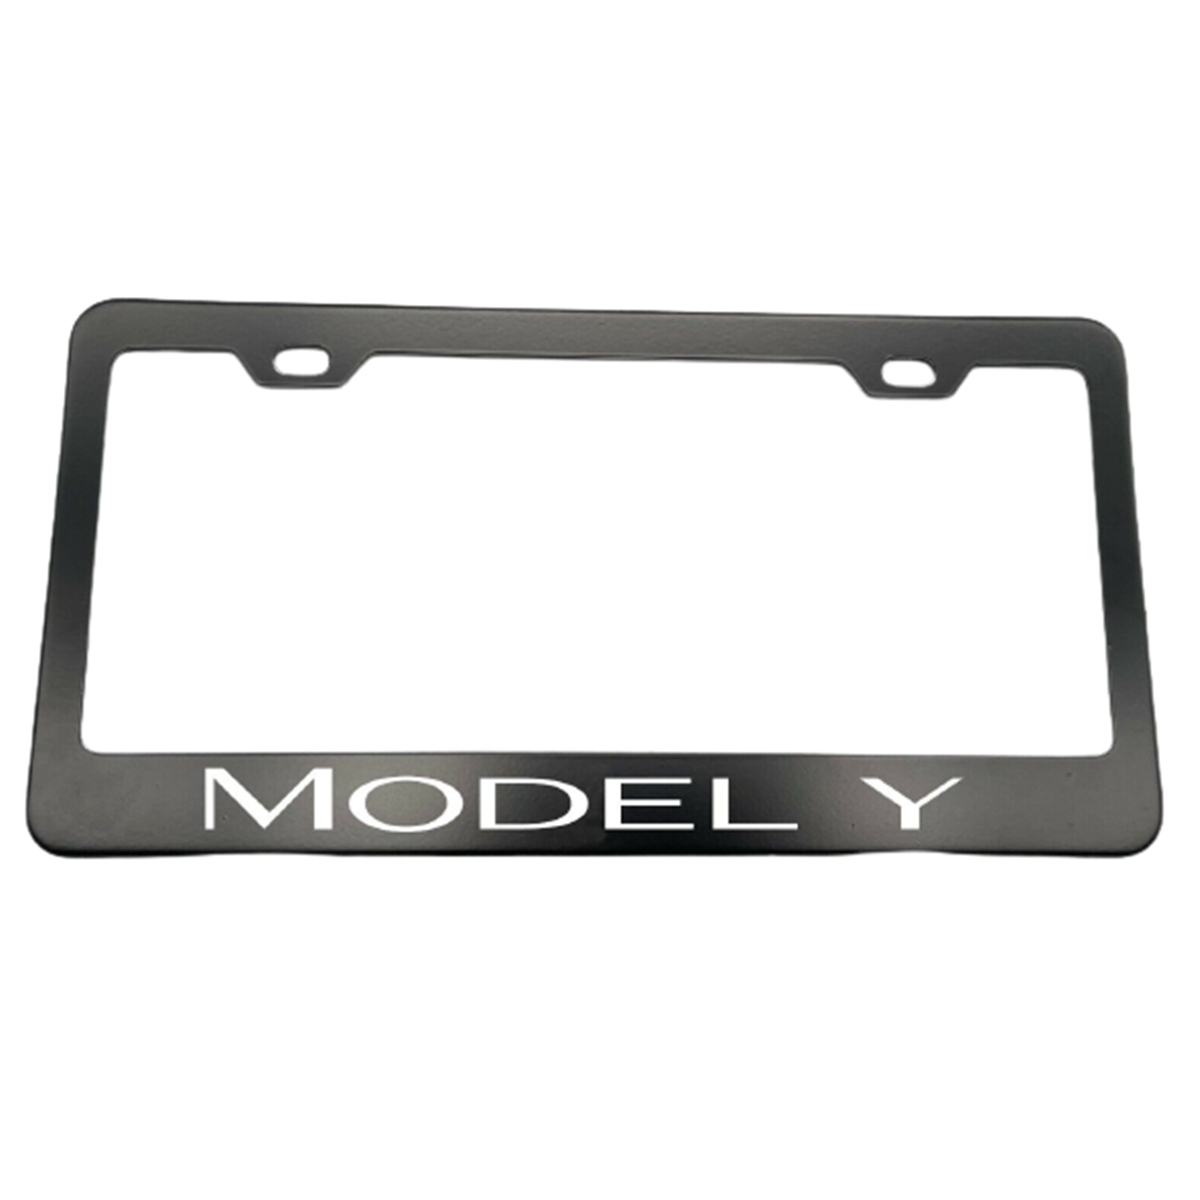 2pcs Tesla Model Y Front License Plate Frame